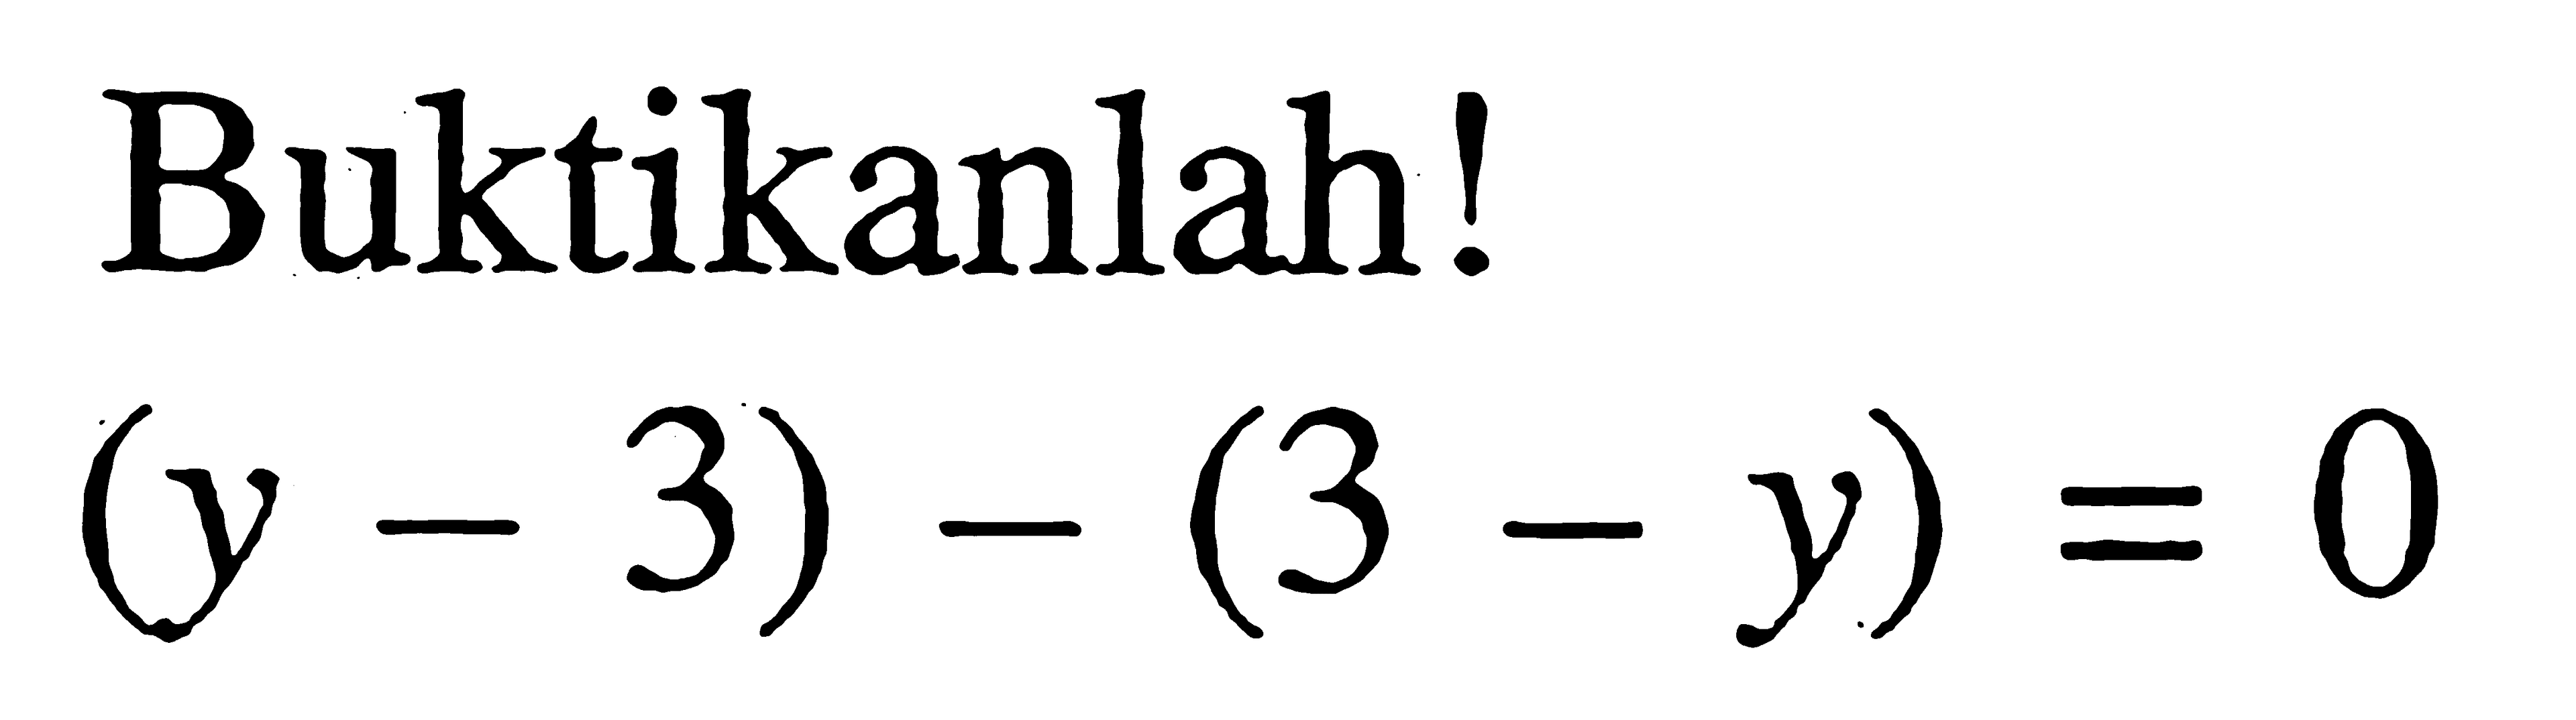 Buktikanlah! (y -3) - (3 - y) = 0